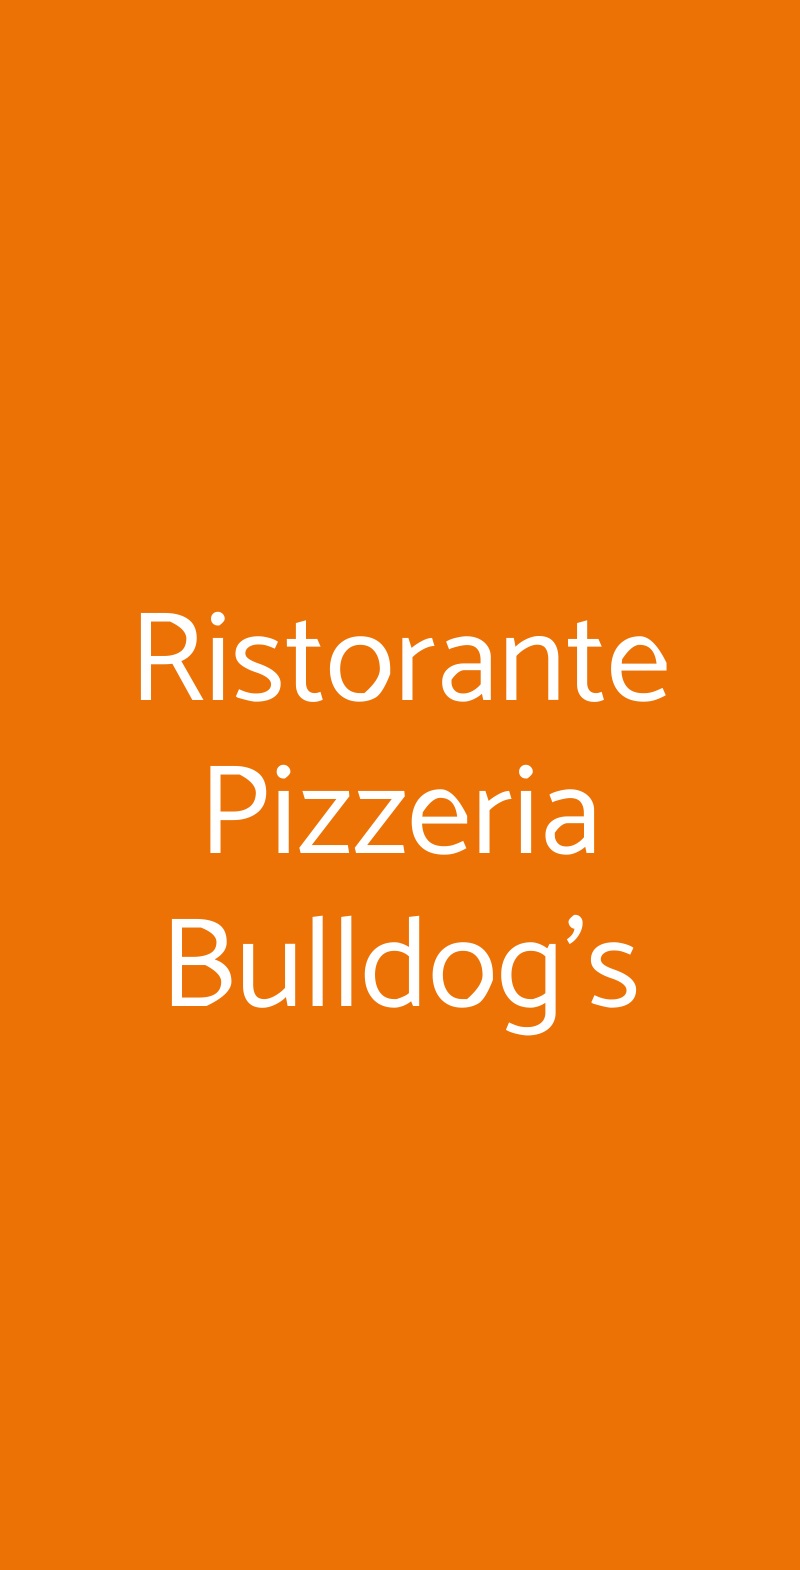 Ristorante Pizzeria Bulldog's Modena menù 1 pagina